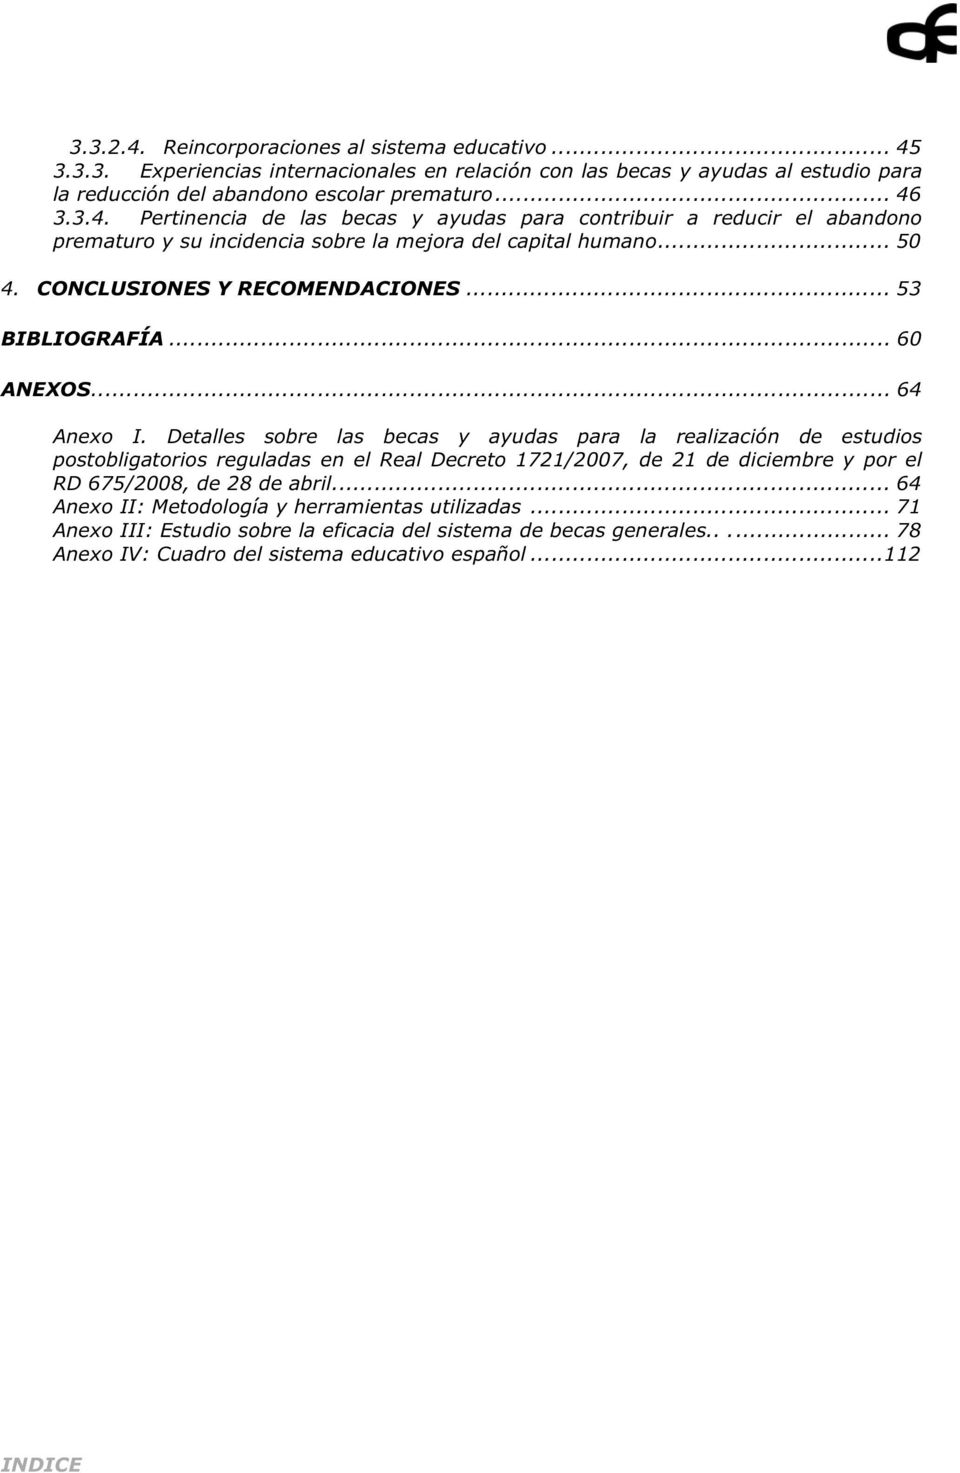 Detalles sobre las becas y ayudas para la realización de estudios postobligatorios reguladas en el Real Decreto 1721/2007, de 21 de diciembre y por el RD 675/2008, de 28 de abril.